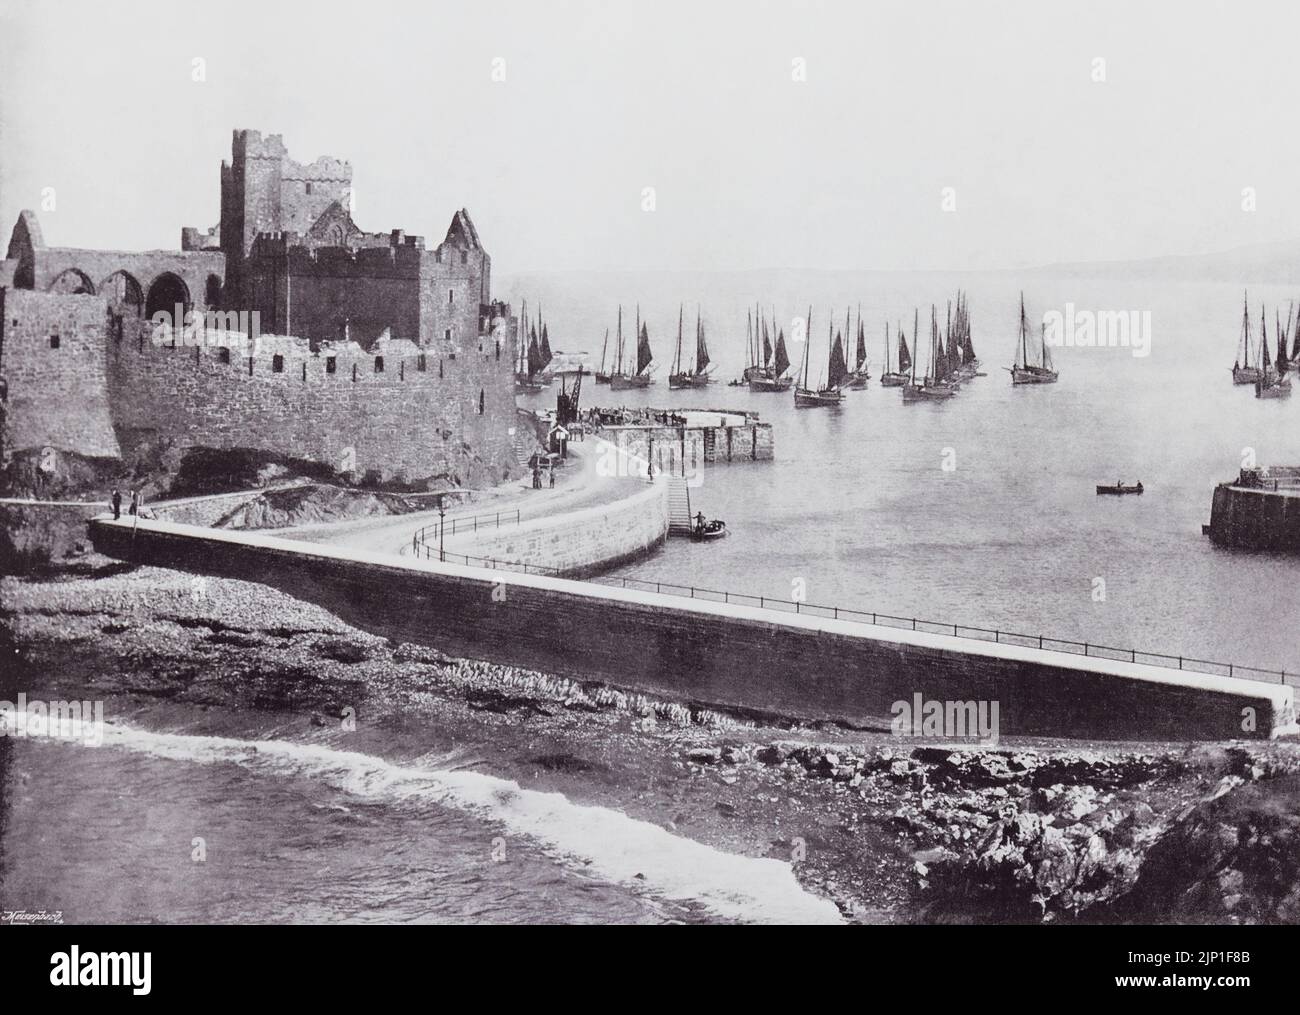 Peel, Isle of man. Die alte Burg und der Hafen, hier im 19.. Jahrhundert gesehen. Aus der ganzen Küste, ein Album mit Bildern von Fotografien der Chief Seaside Orte von Interesse in Großbritannien und Irland veröffentlicht London, 1895, von George Newnes Limited. Stockfoto